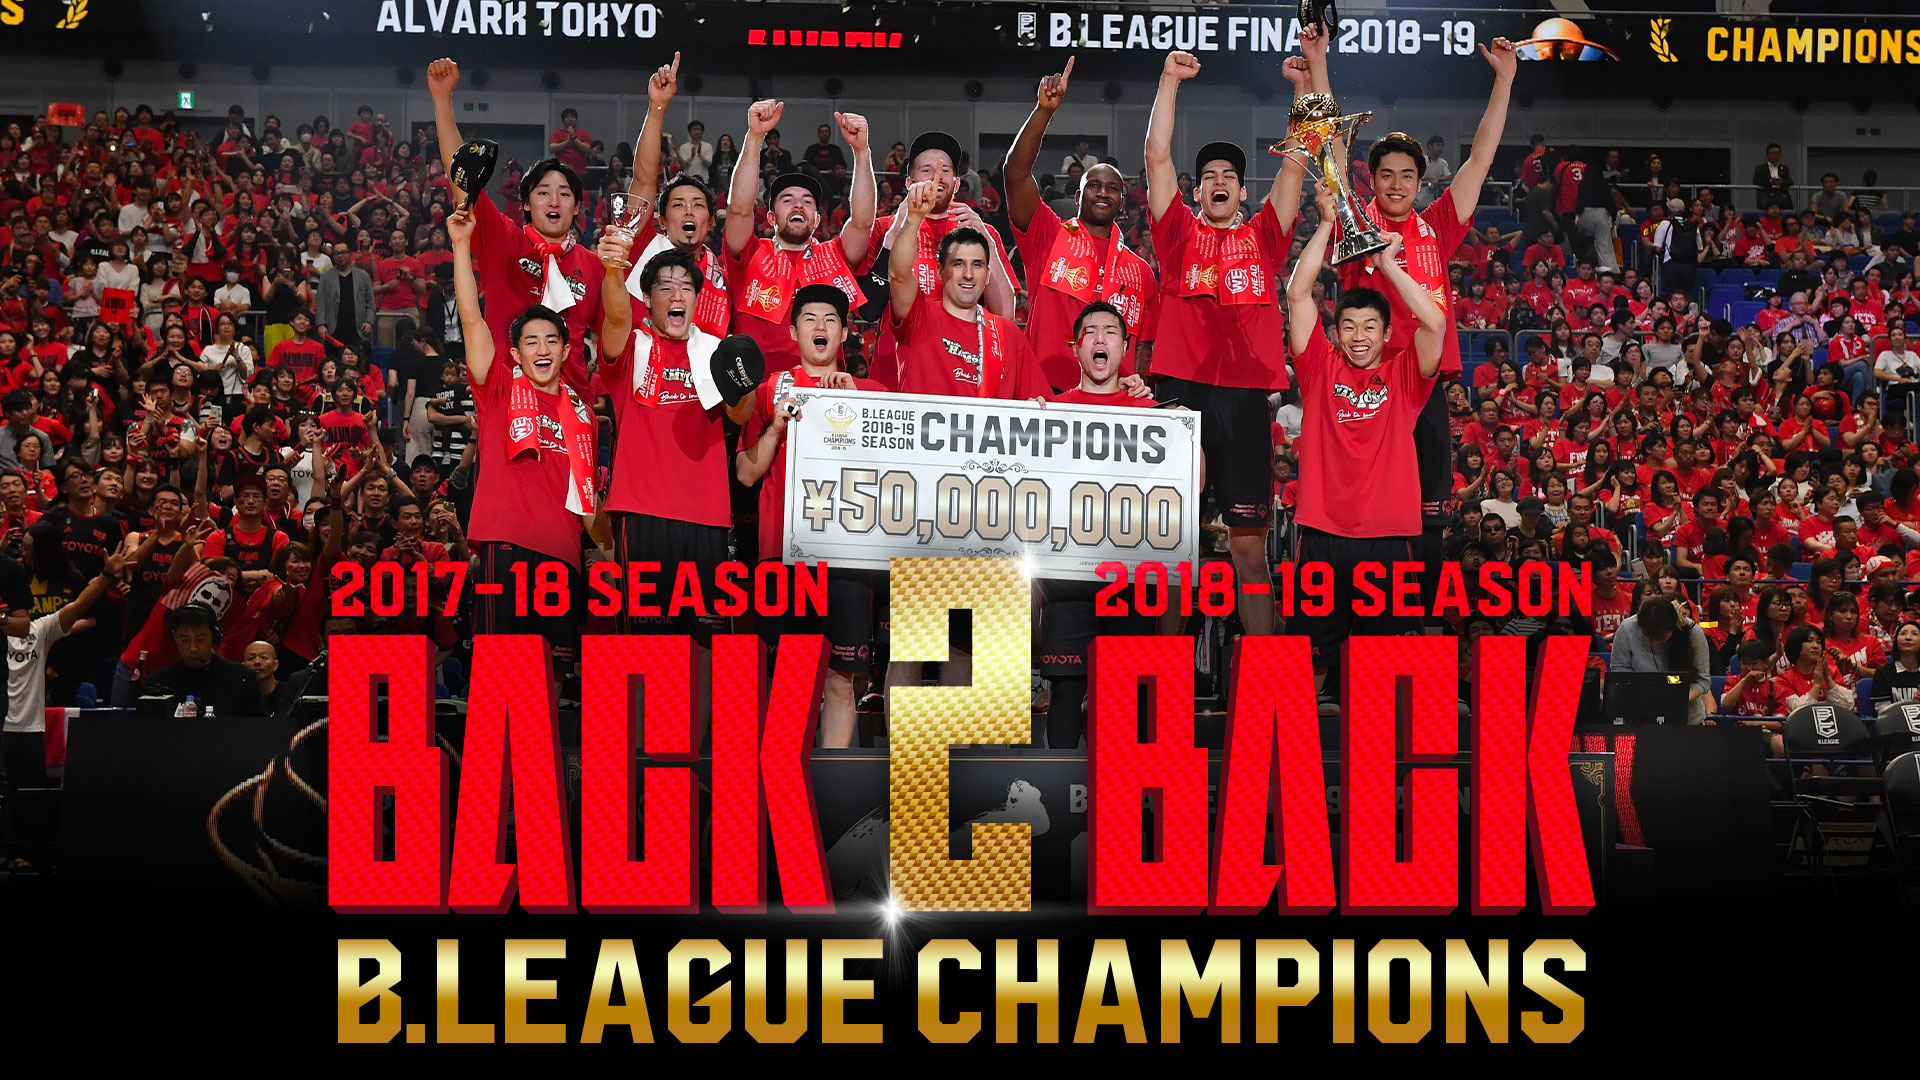 18 19シーズン優勝記念特設ページ B League所属のプロバスケットボールチームアルバルク東京の公式サイト アルバルク東京